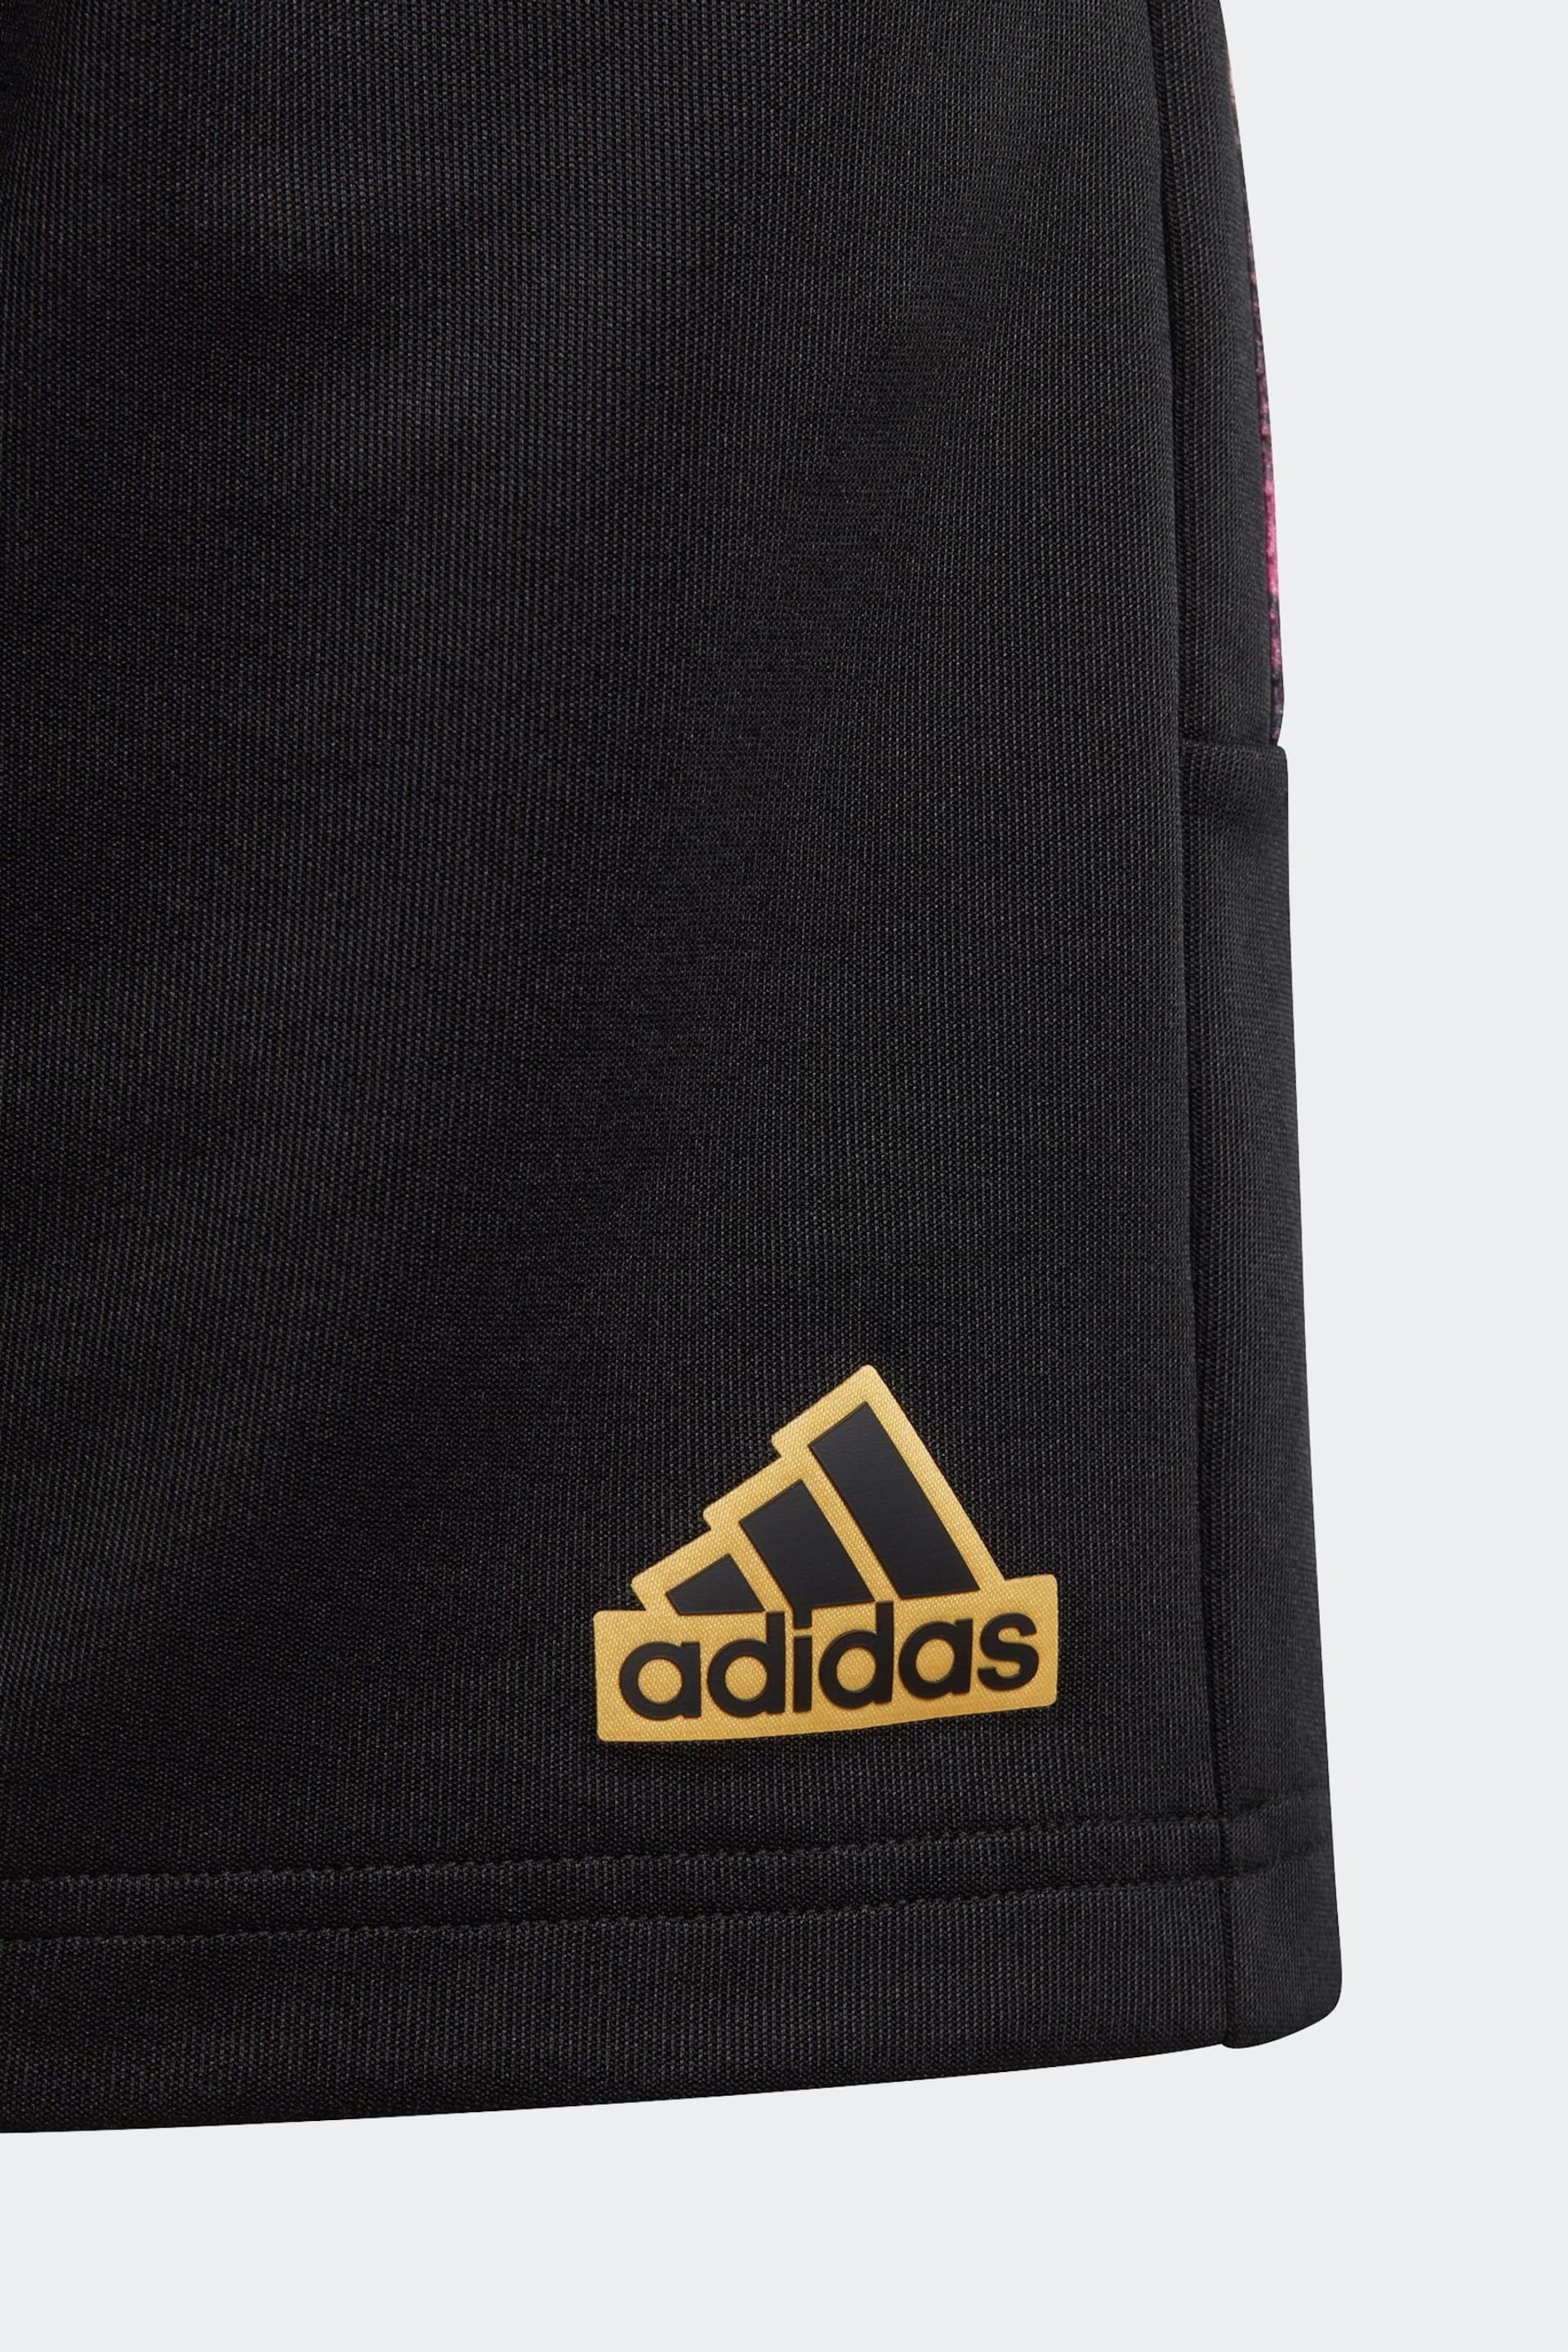 adidas Black Shorts - Image 4 of 5